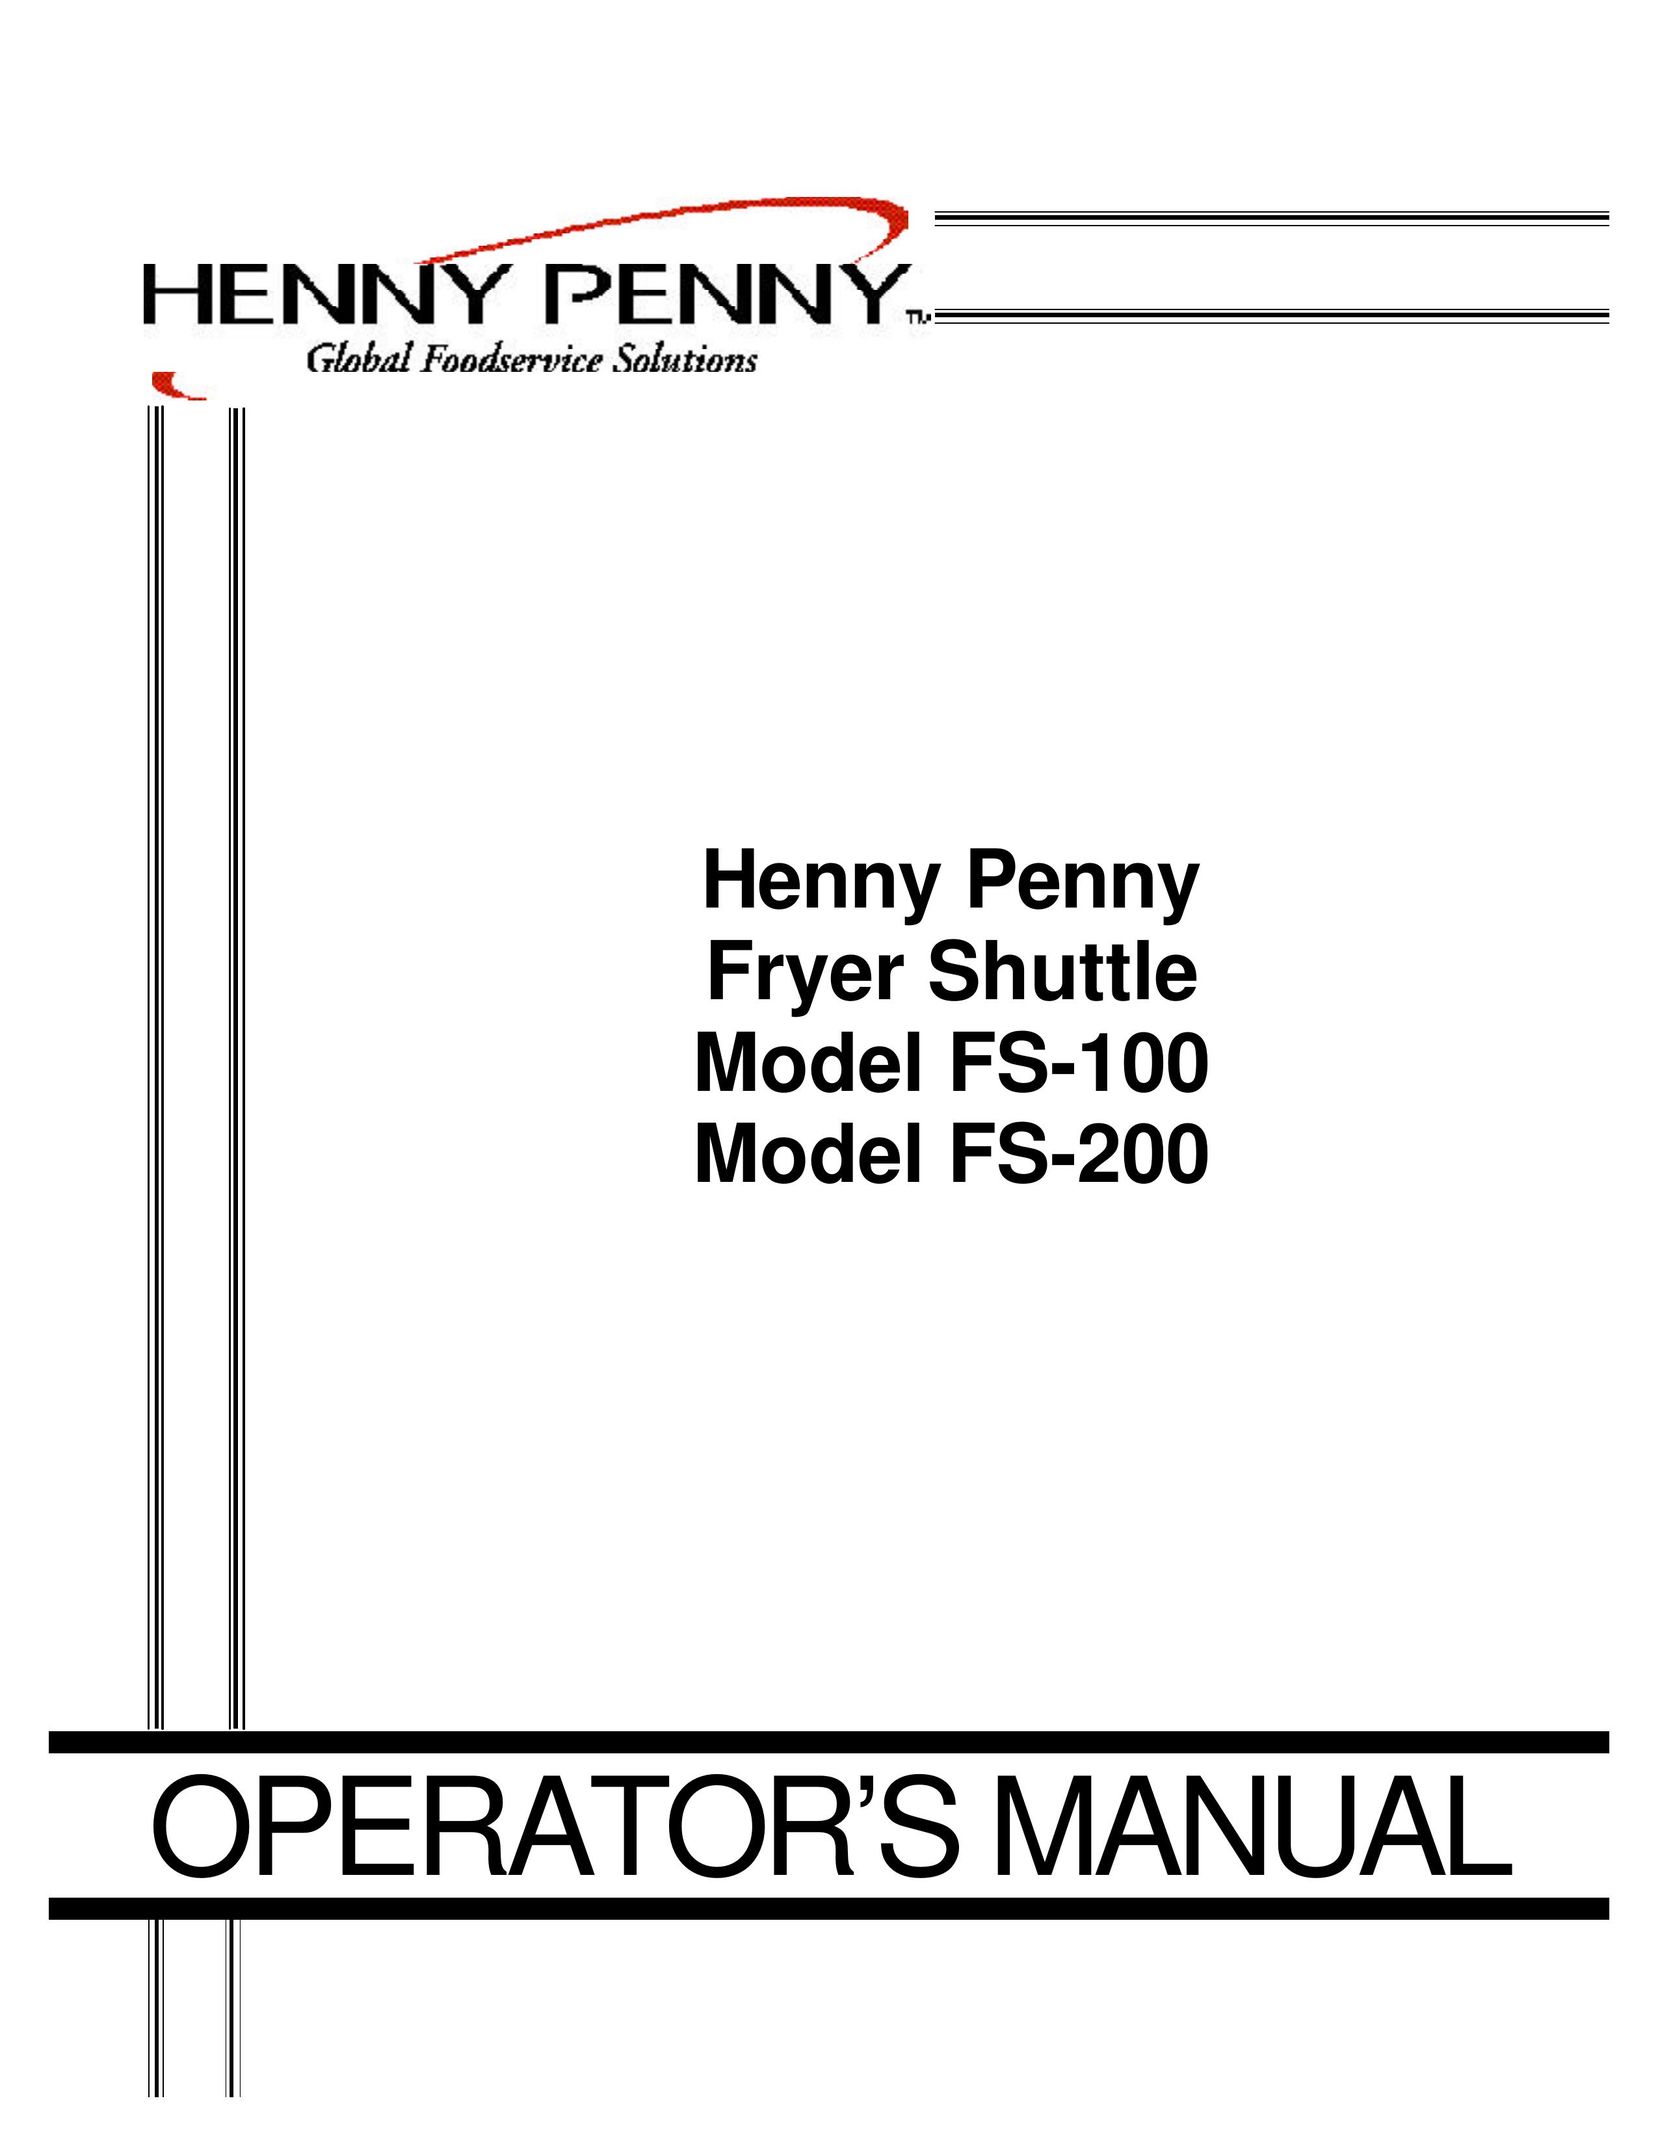 Henny Penny FS-200 Fryer User Manual